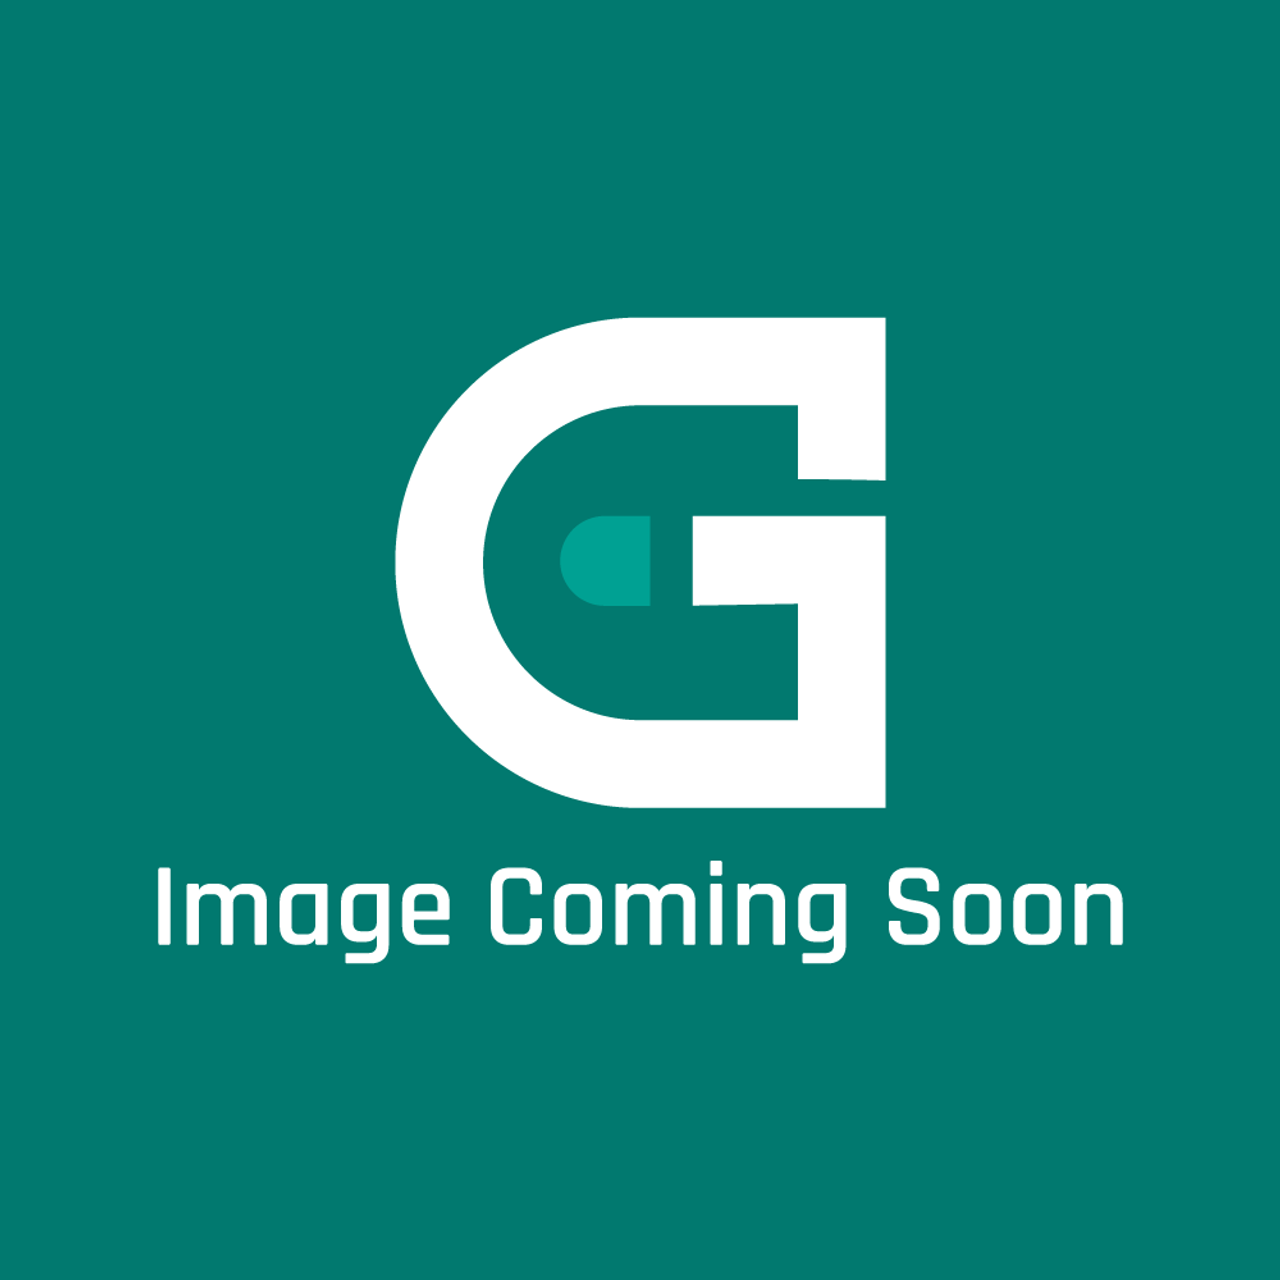 GE Appliances WB35K10137 - Rr Insul Door Btm 12" - Image Coming Soon!